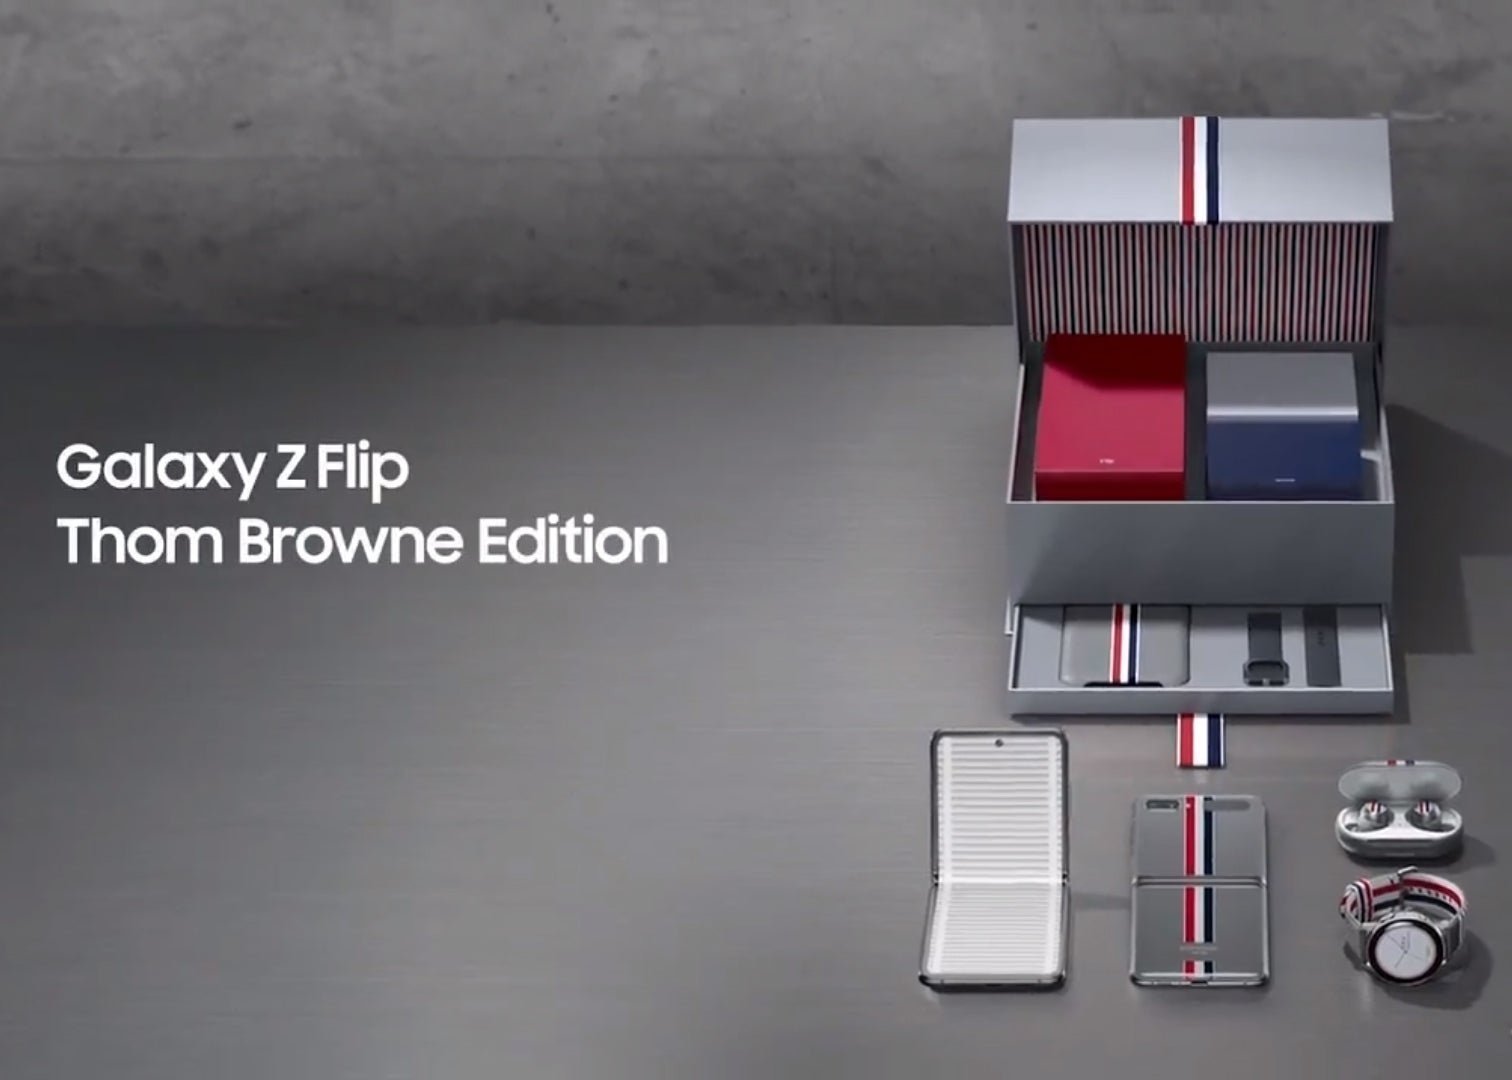 El Samsung Galaxy Z Flip tendrá una edición exclusiva inspirada en un famoso diseñador